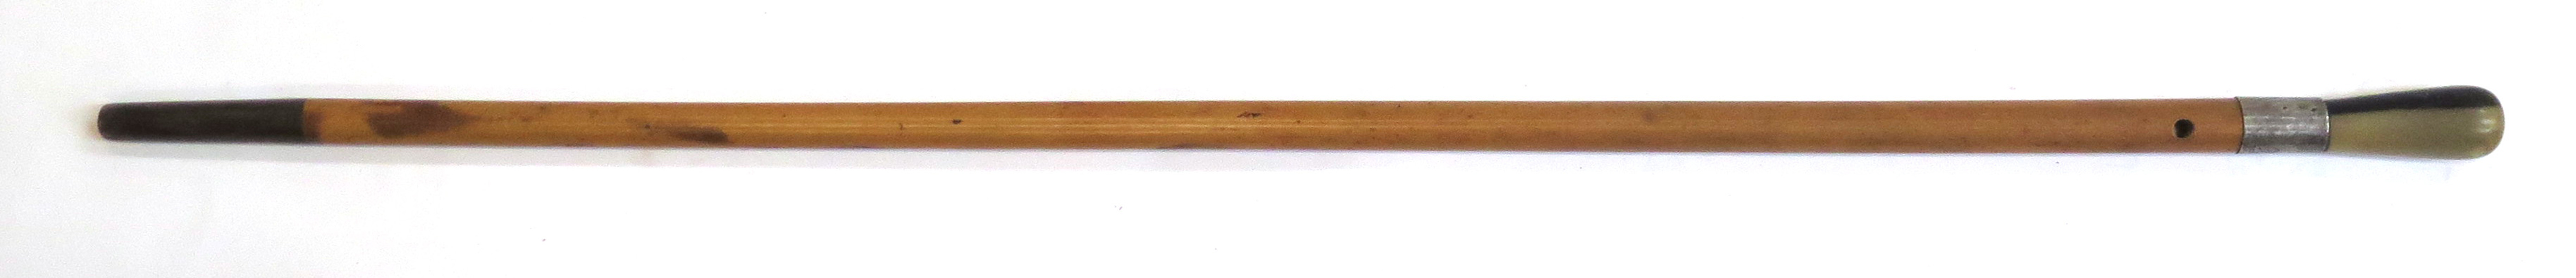 Käpp, bambu och horn med silverbeslag, 1900-talets 1 hälft, _14974a_lg.jpeg